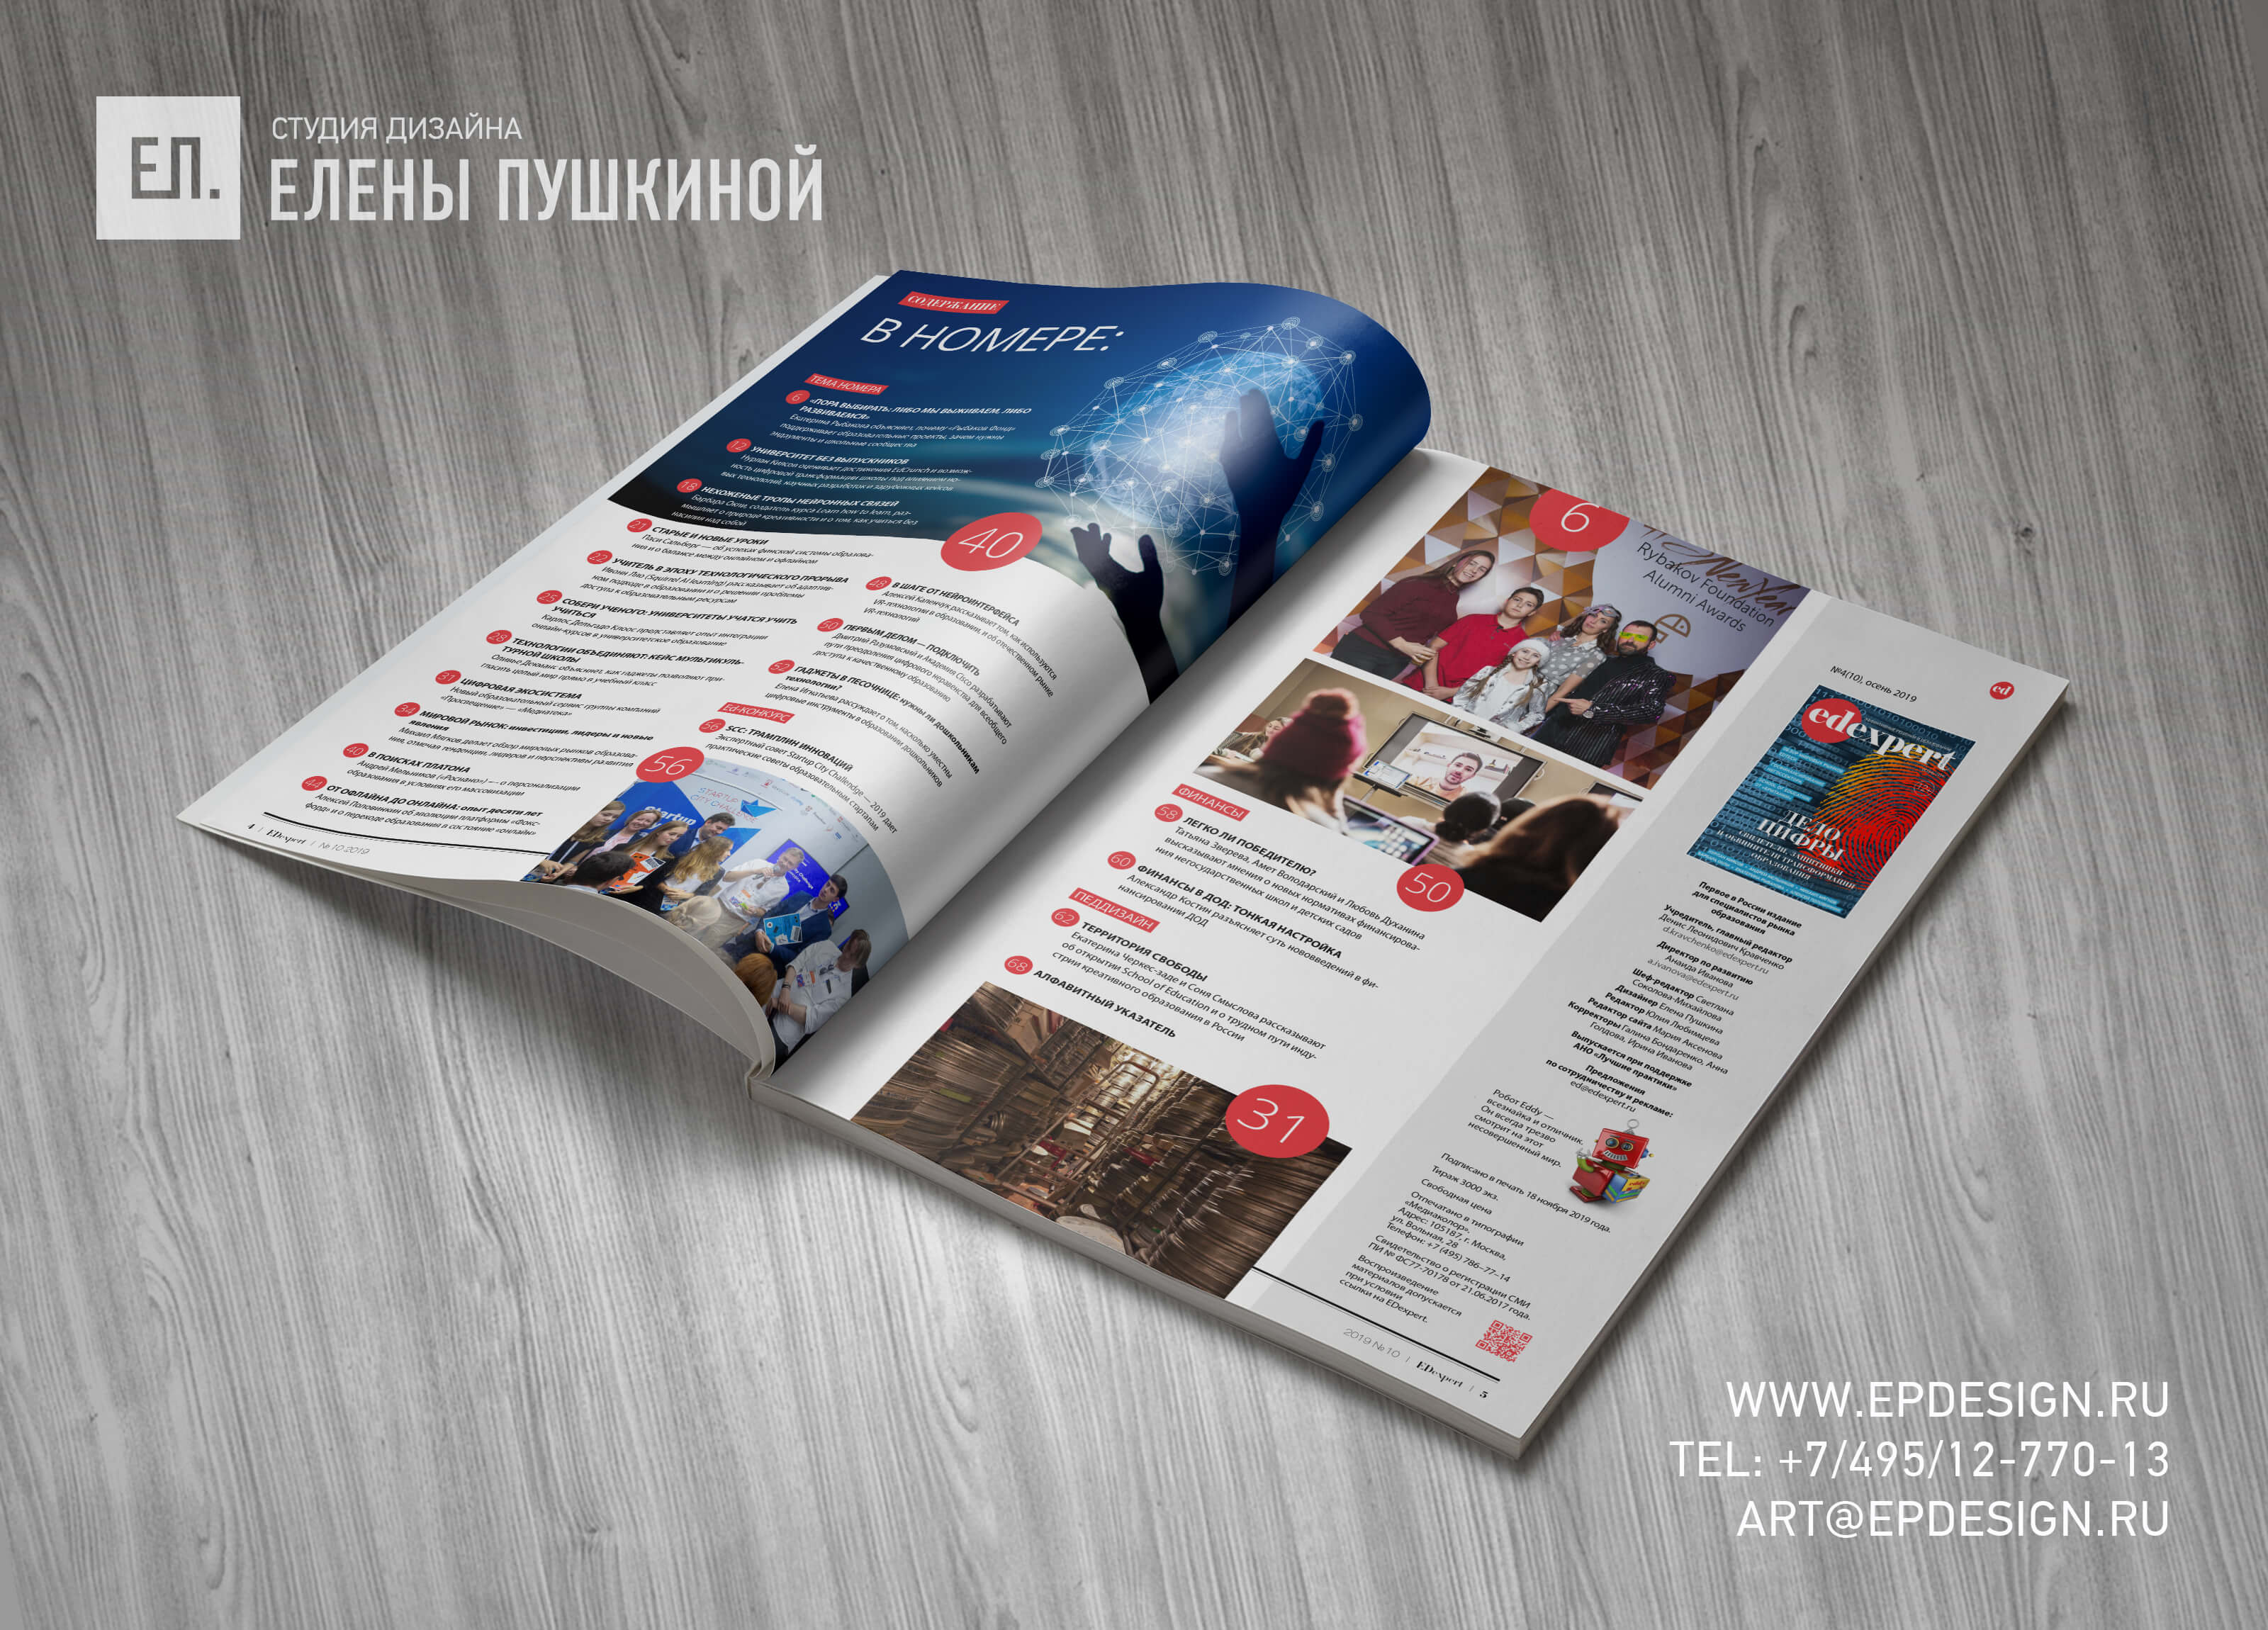 Дизайн и вёрстка десятого выпуска «EDexpert» — первого в России издания для специалистов рынка образования. Блог Заметки